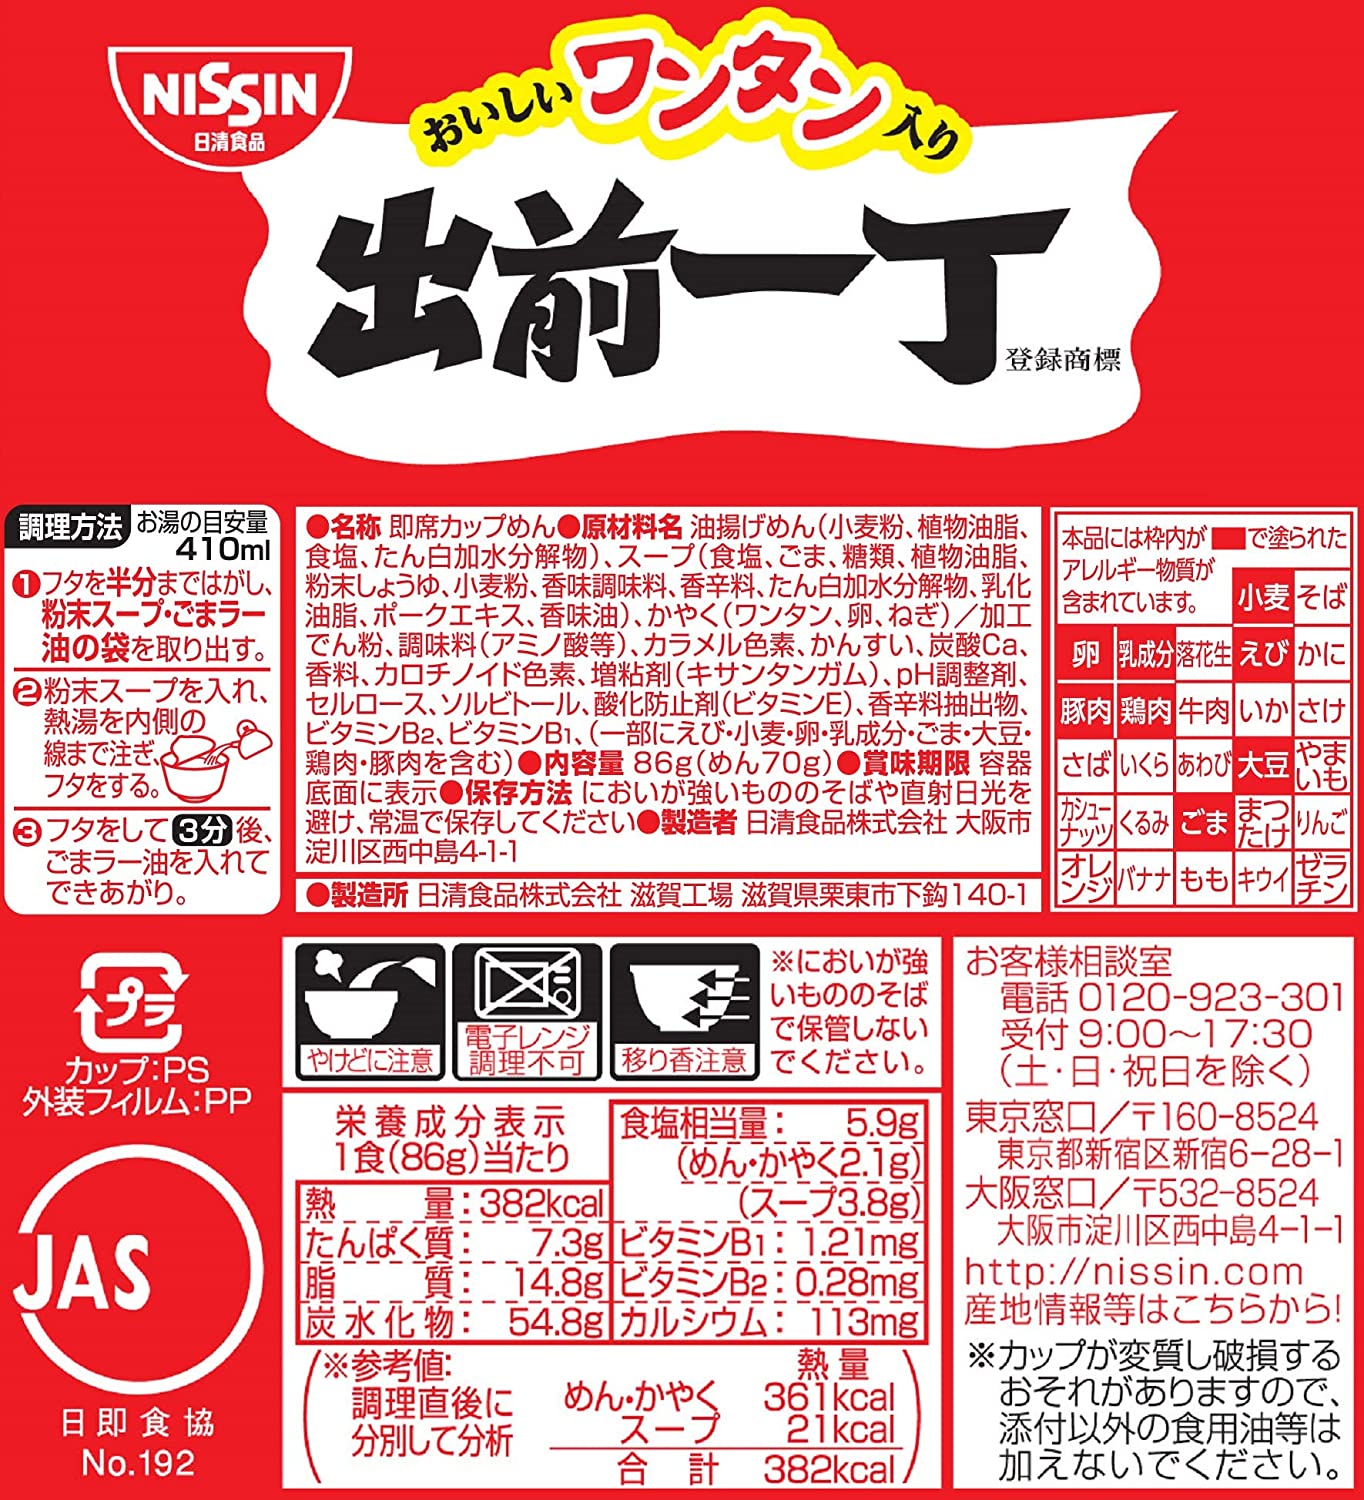 NISSIN Ramen Noodles Demae Wonton Soy Sauce Instant Food Soup Cup Japan 86g